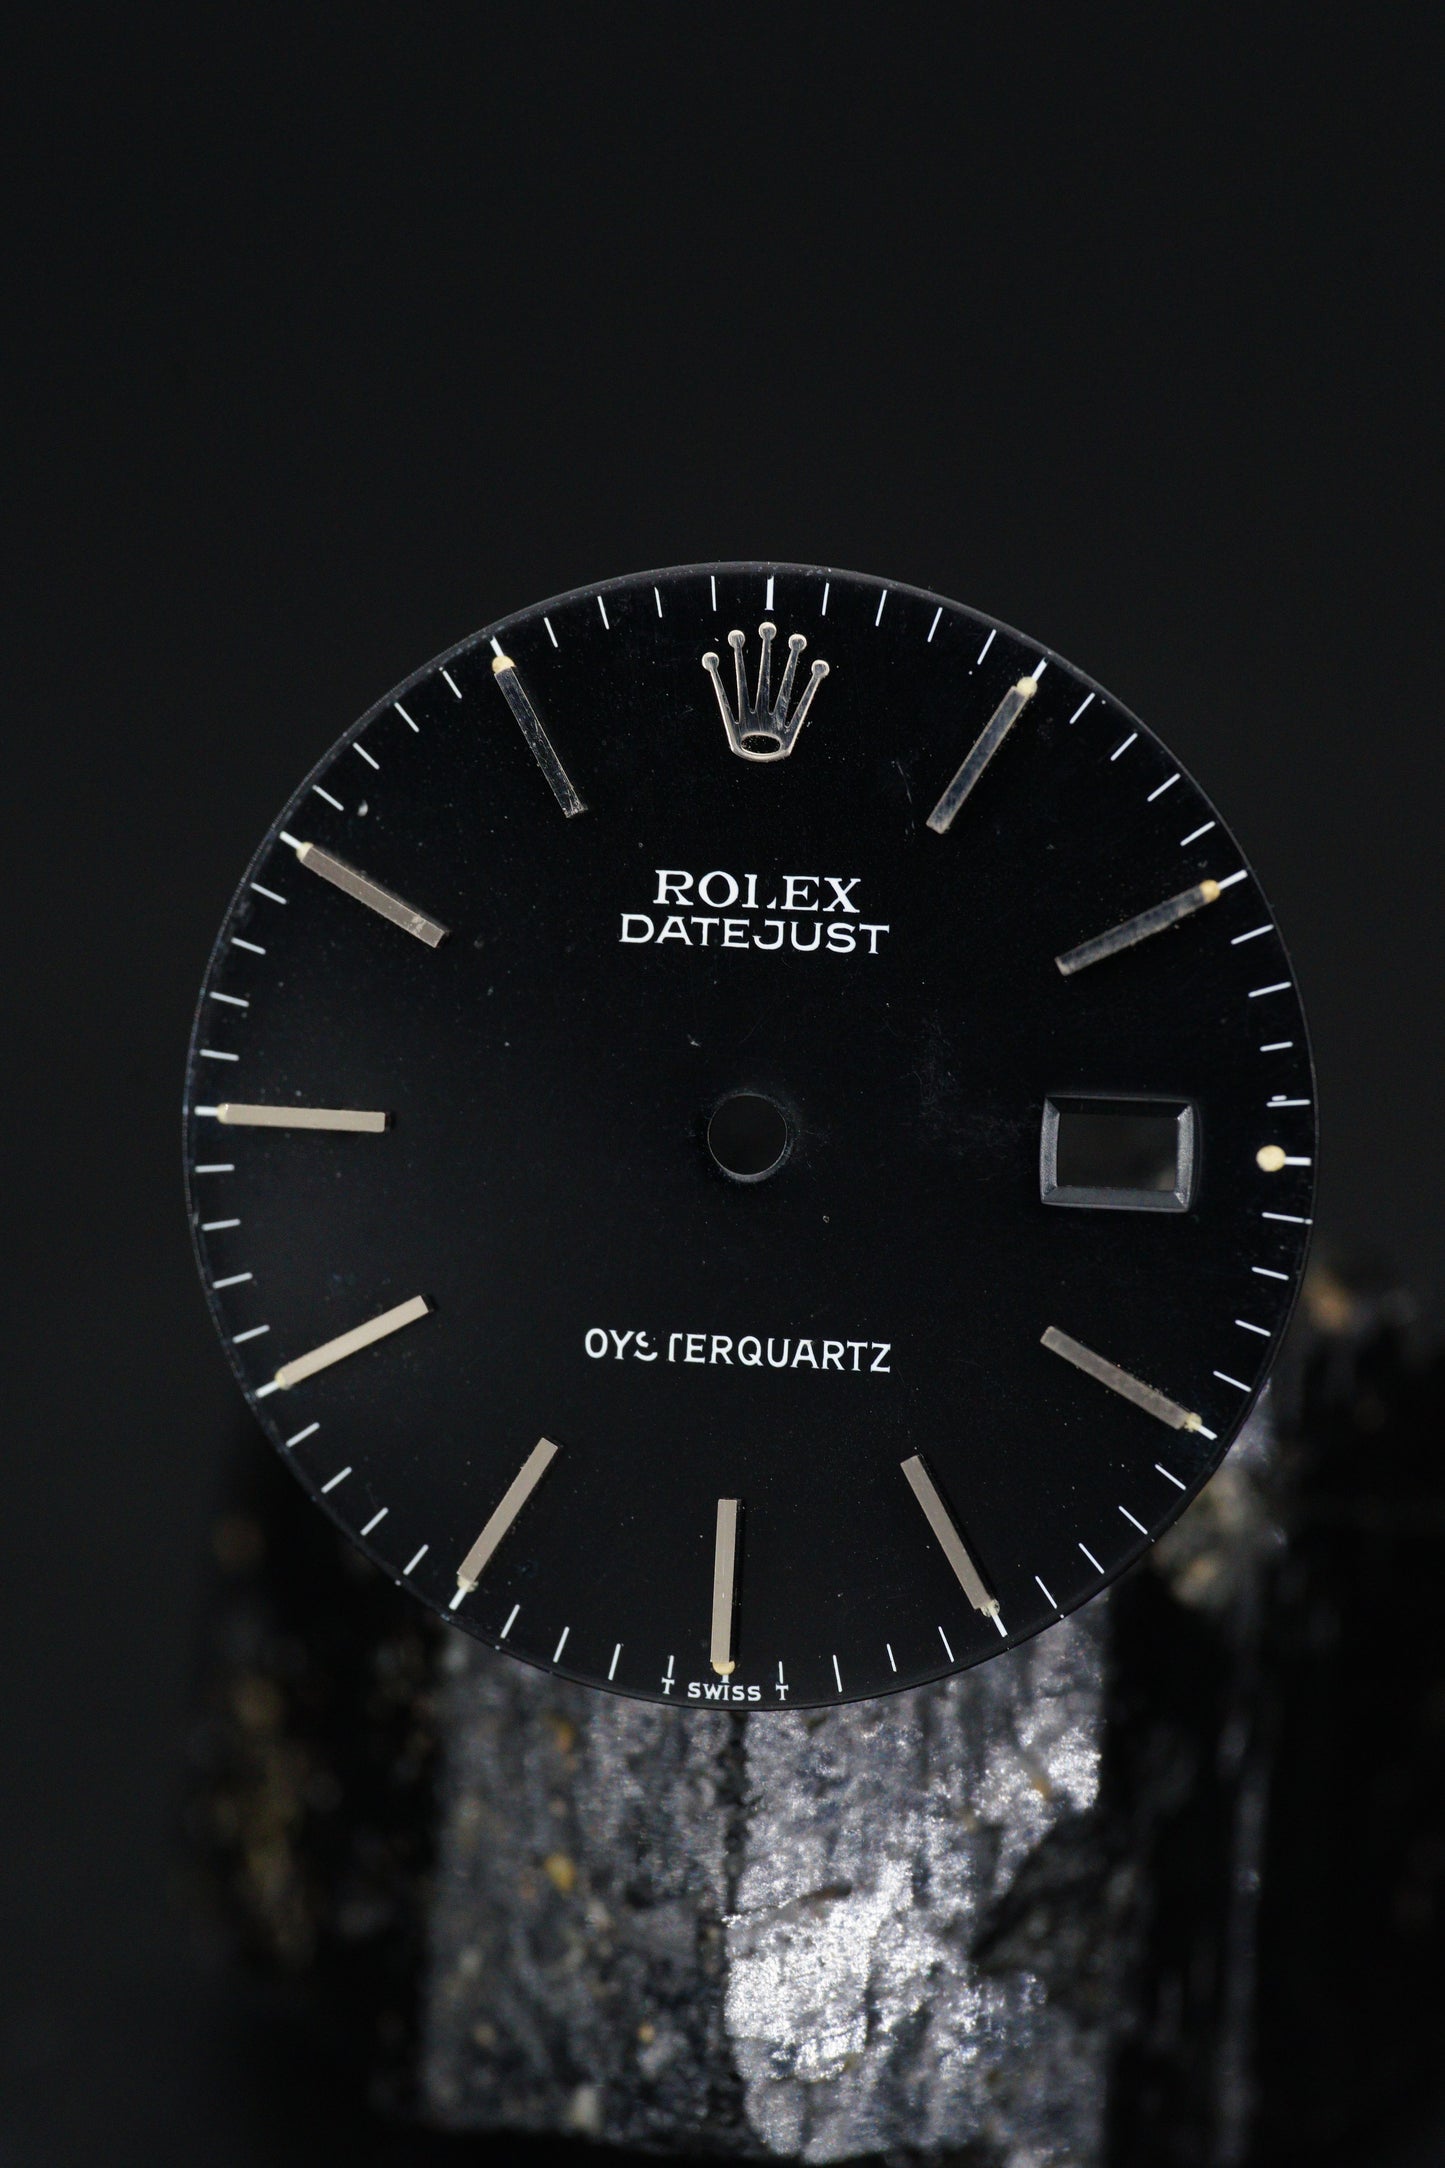 Rolex MKI Dial for Oysterquartz 17000 | 17013 Tritium